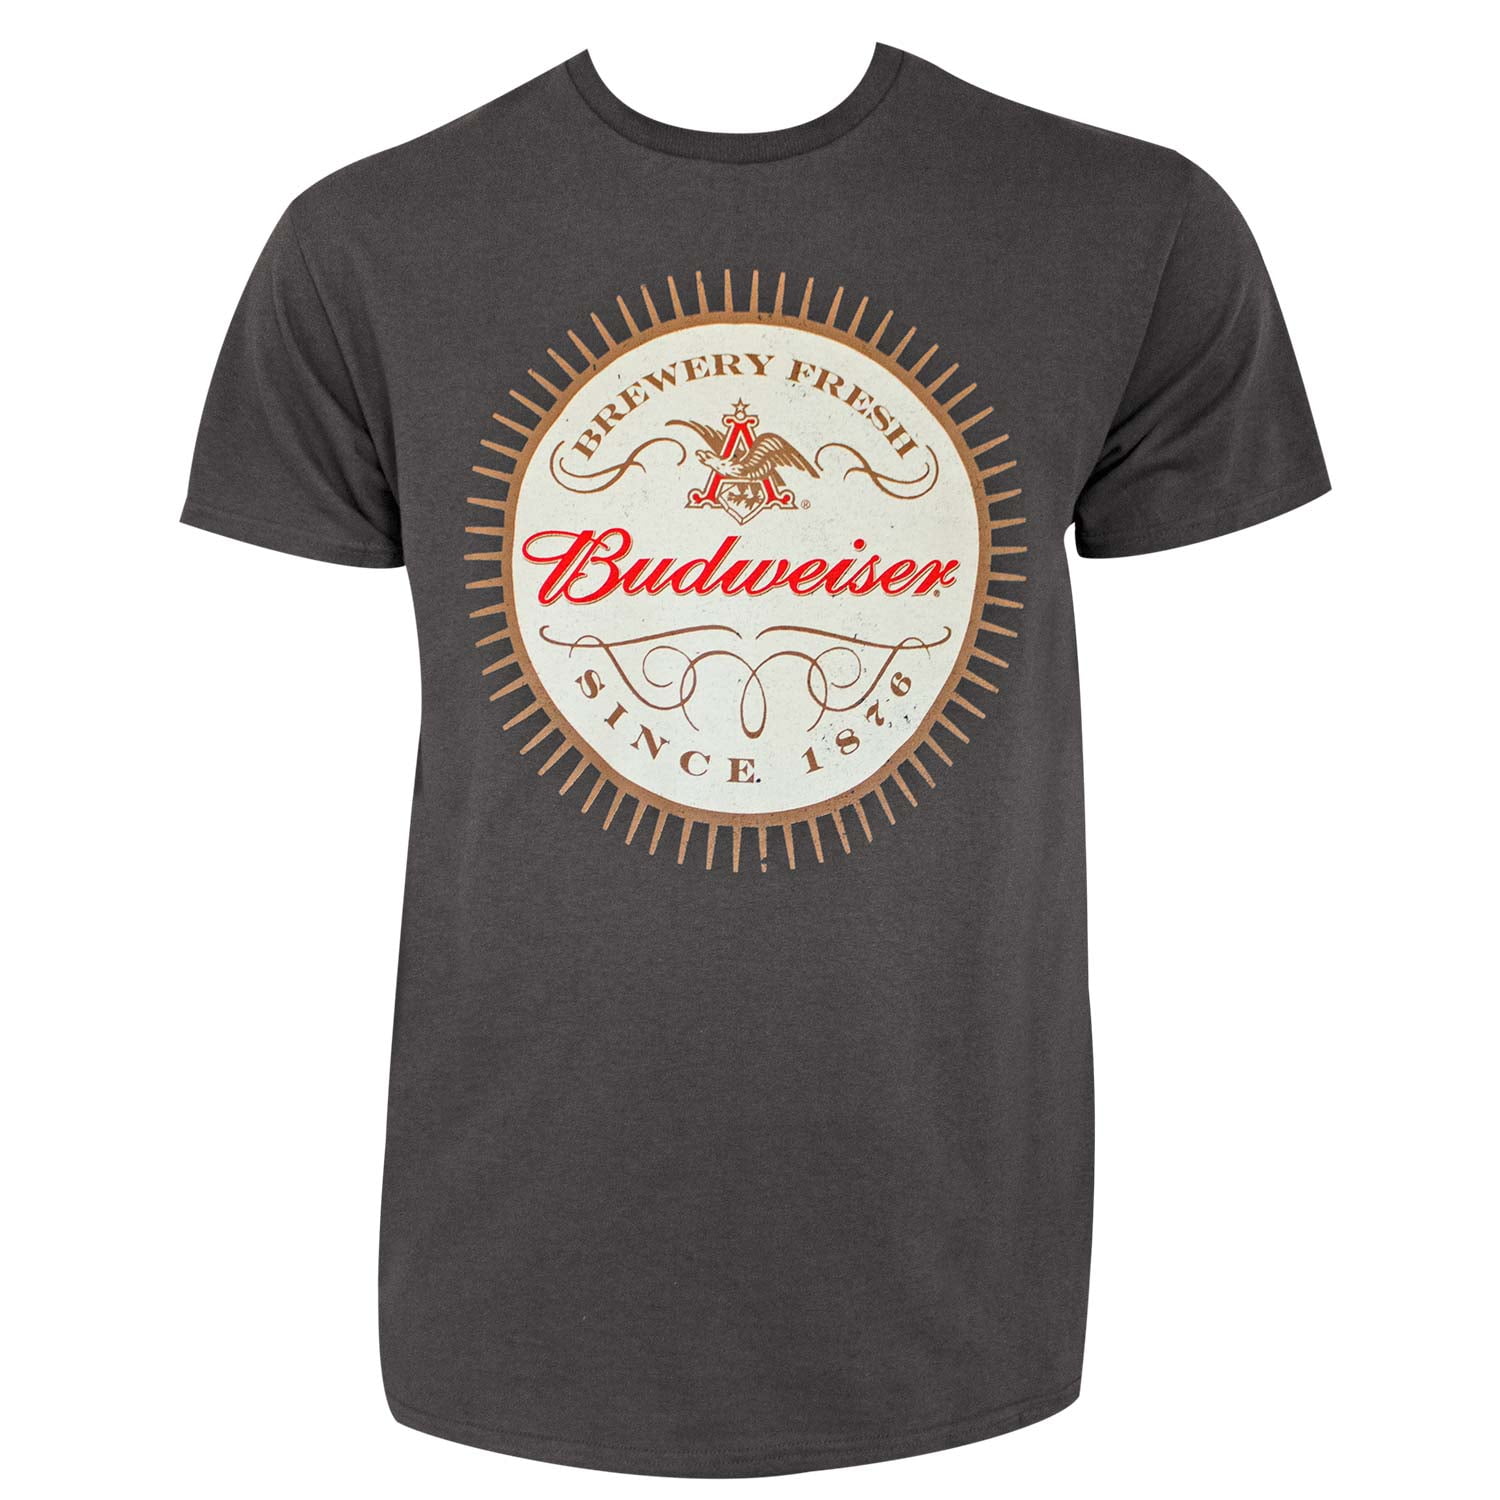 Budweiser - Budweiser Men's Grey Since 1876 T-Shirt-Medium - Walmart ...